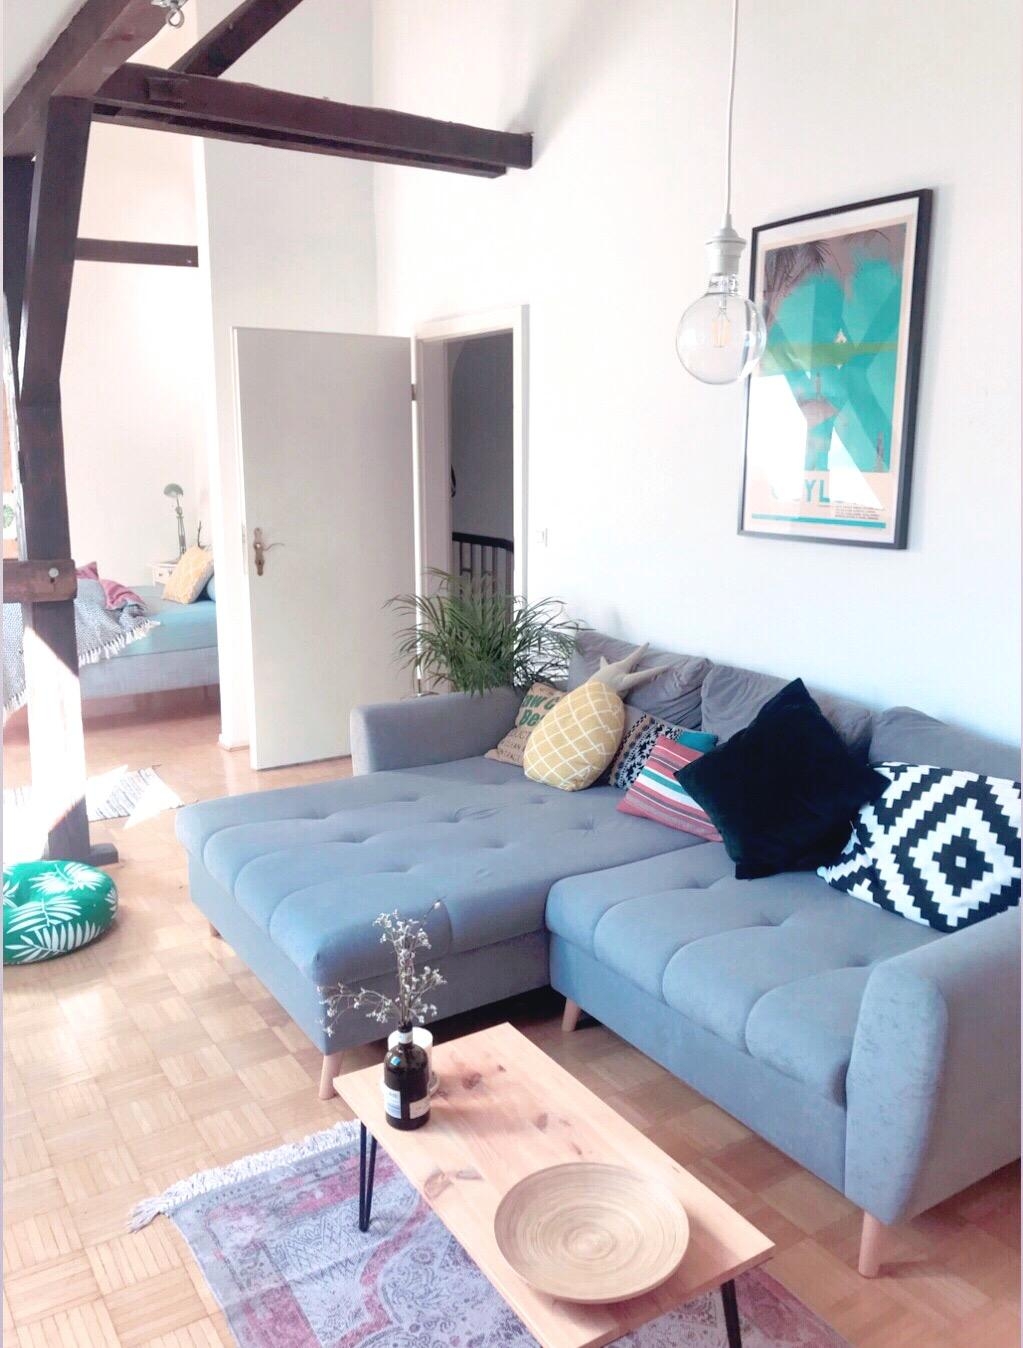 #livingroom #Wohnzimmer #gemütlich #living #Altbau #boho